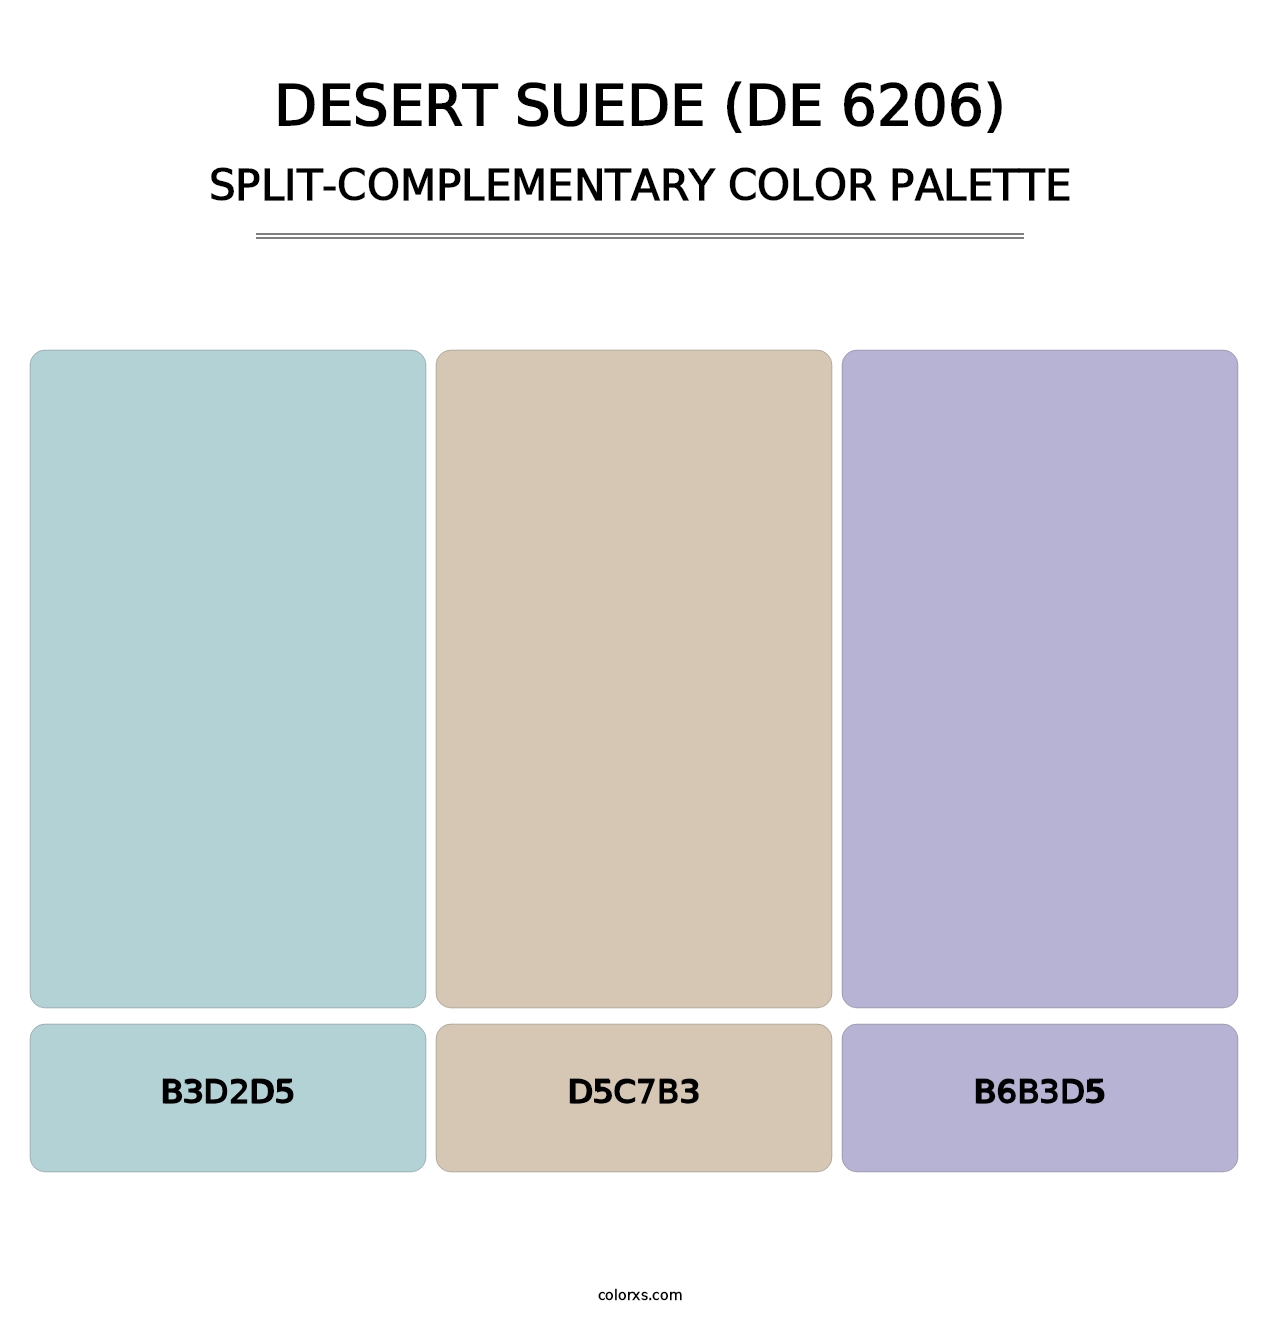 Desert Suede (DE 6206) - Split-Complementary Color Palette